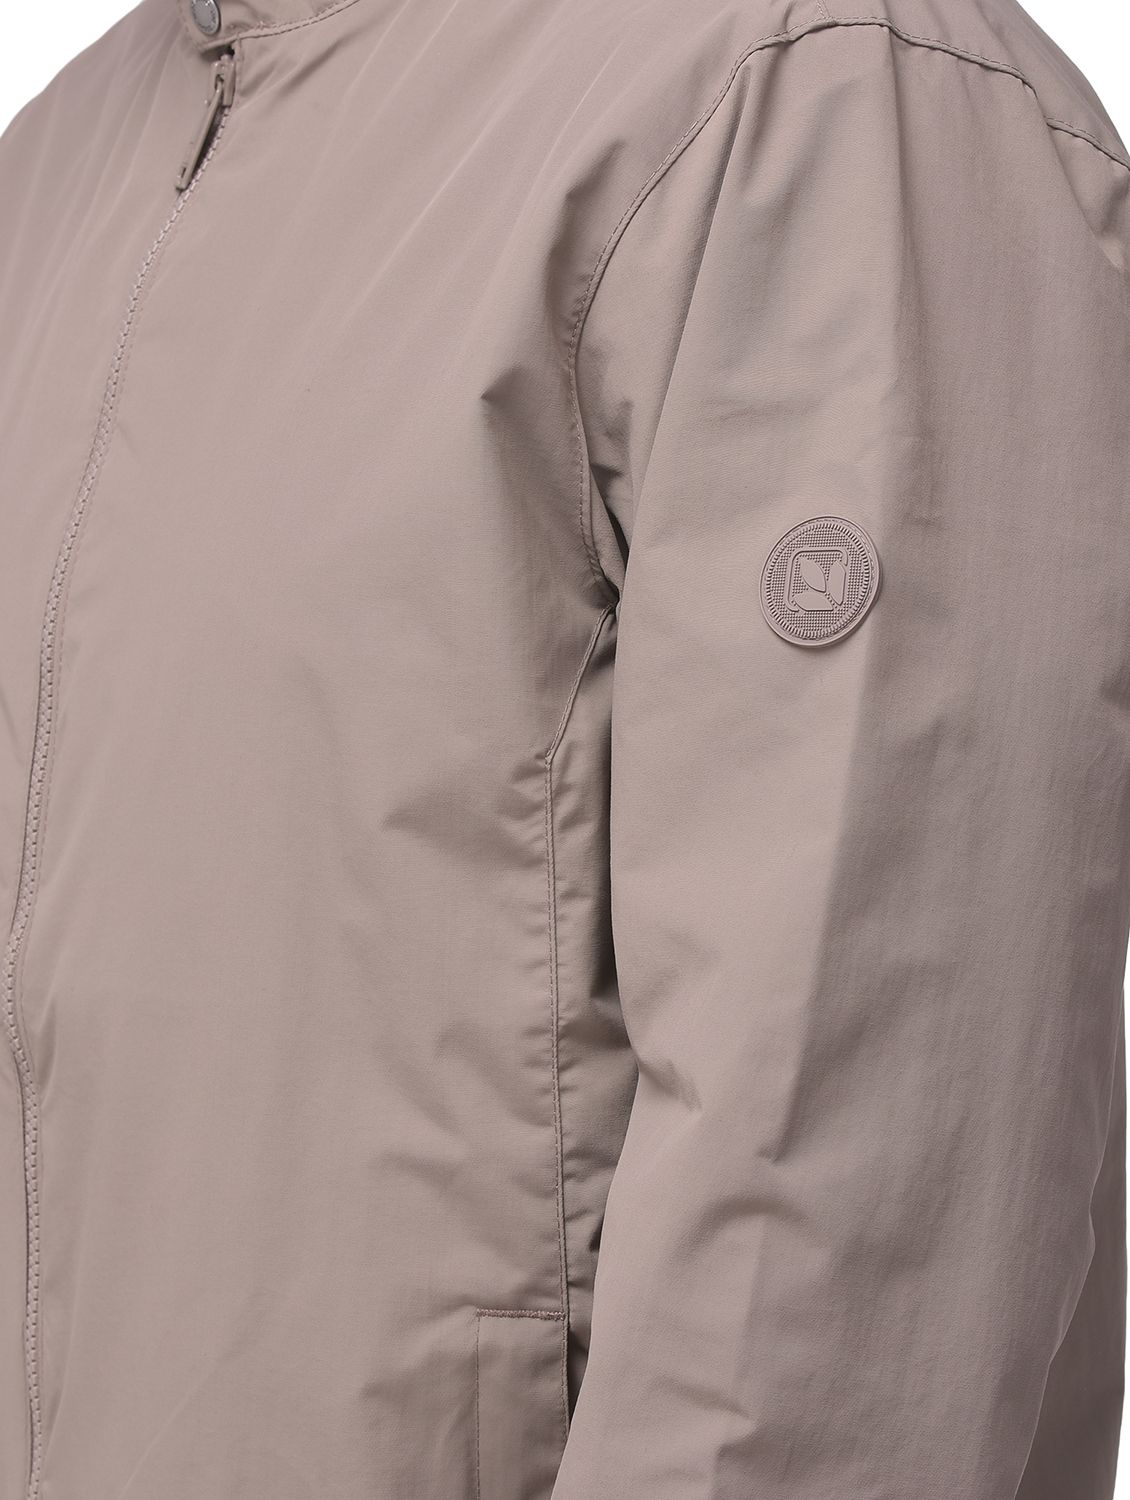 TAUPE GREY long sleeve jacket